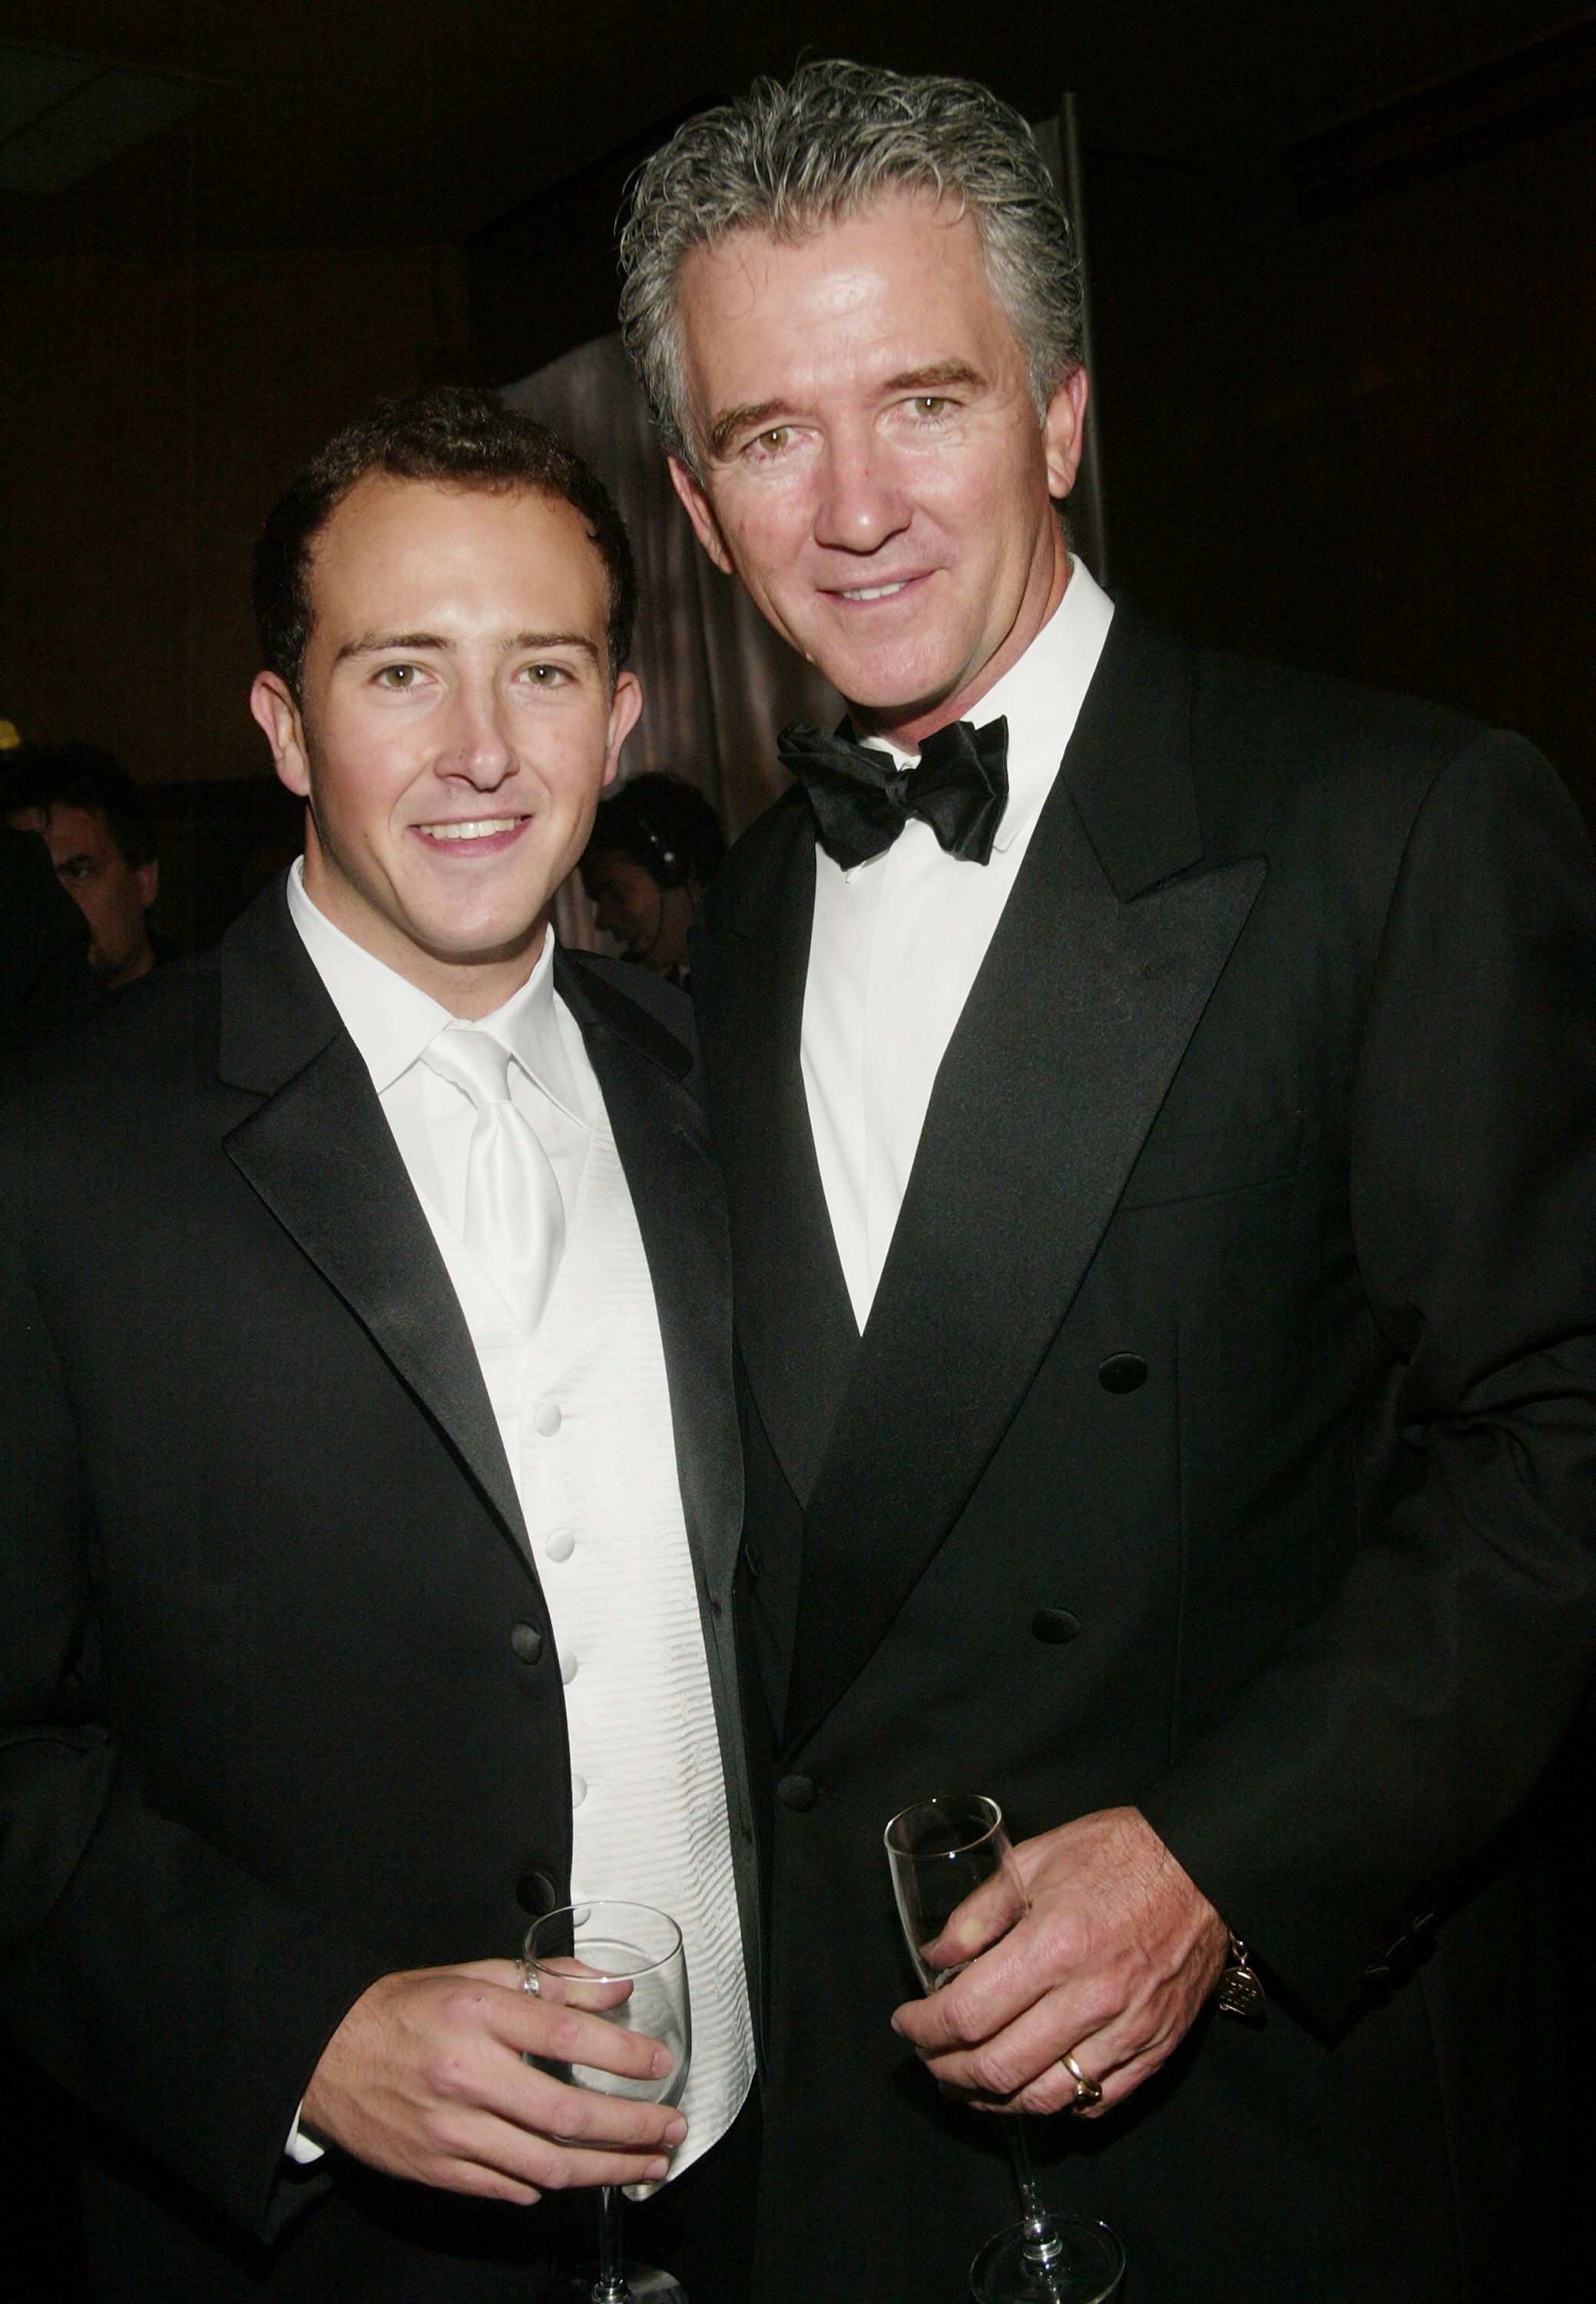 Patrick Duffy y su hijo Conor asisten al cóctel de la gala televisiva "CBS at 75" en el Hammerstein Ballroom el 2 de noviembre de 2003, en la ciudad de Nueva York. | Foto: Getty Images